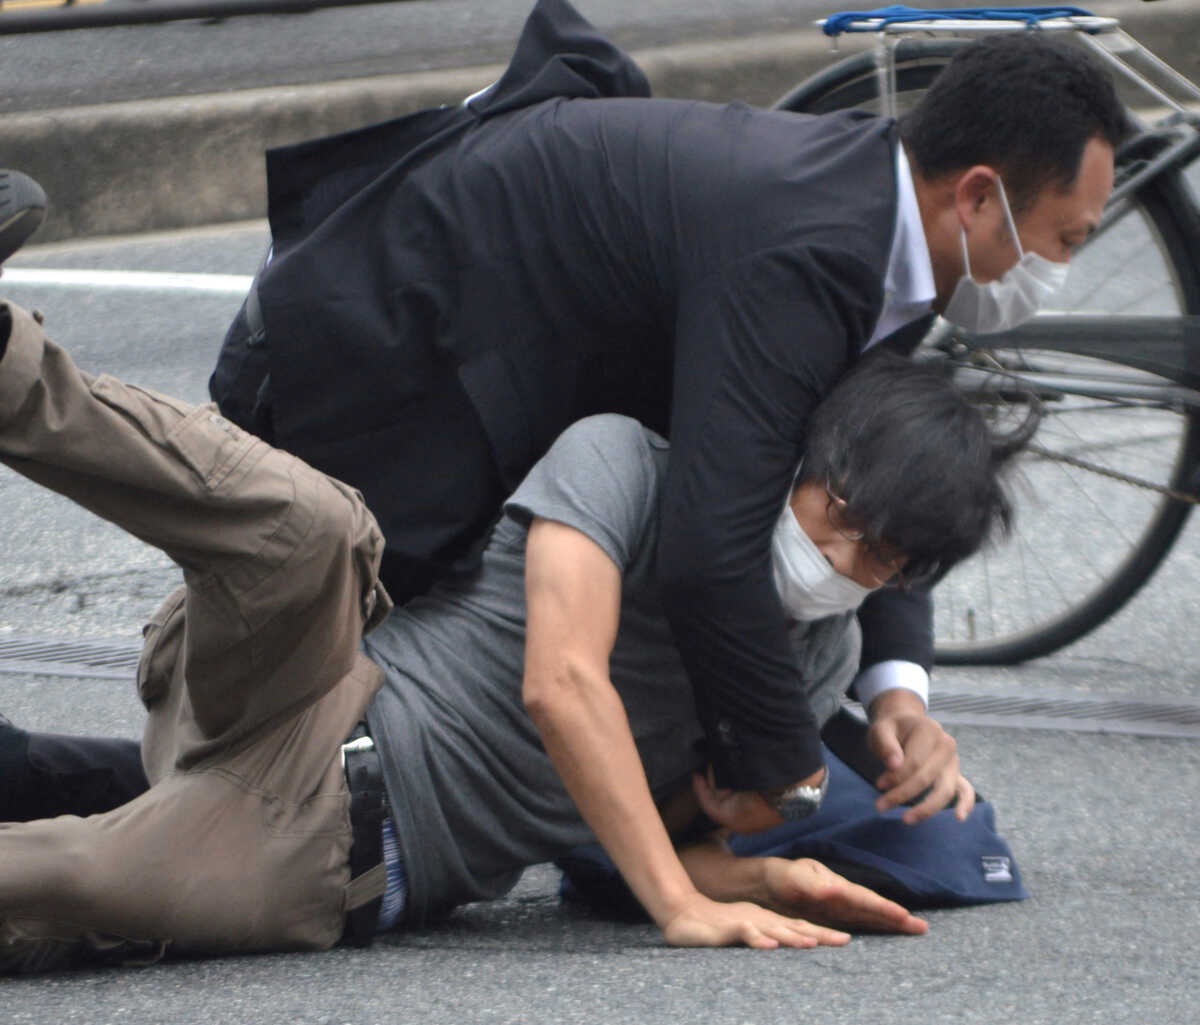 Ιαπωνία: Η στιγμή του πυροβολισμού στον Σίνζο Άμπε